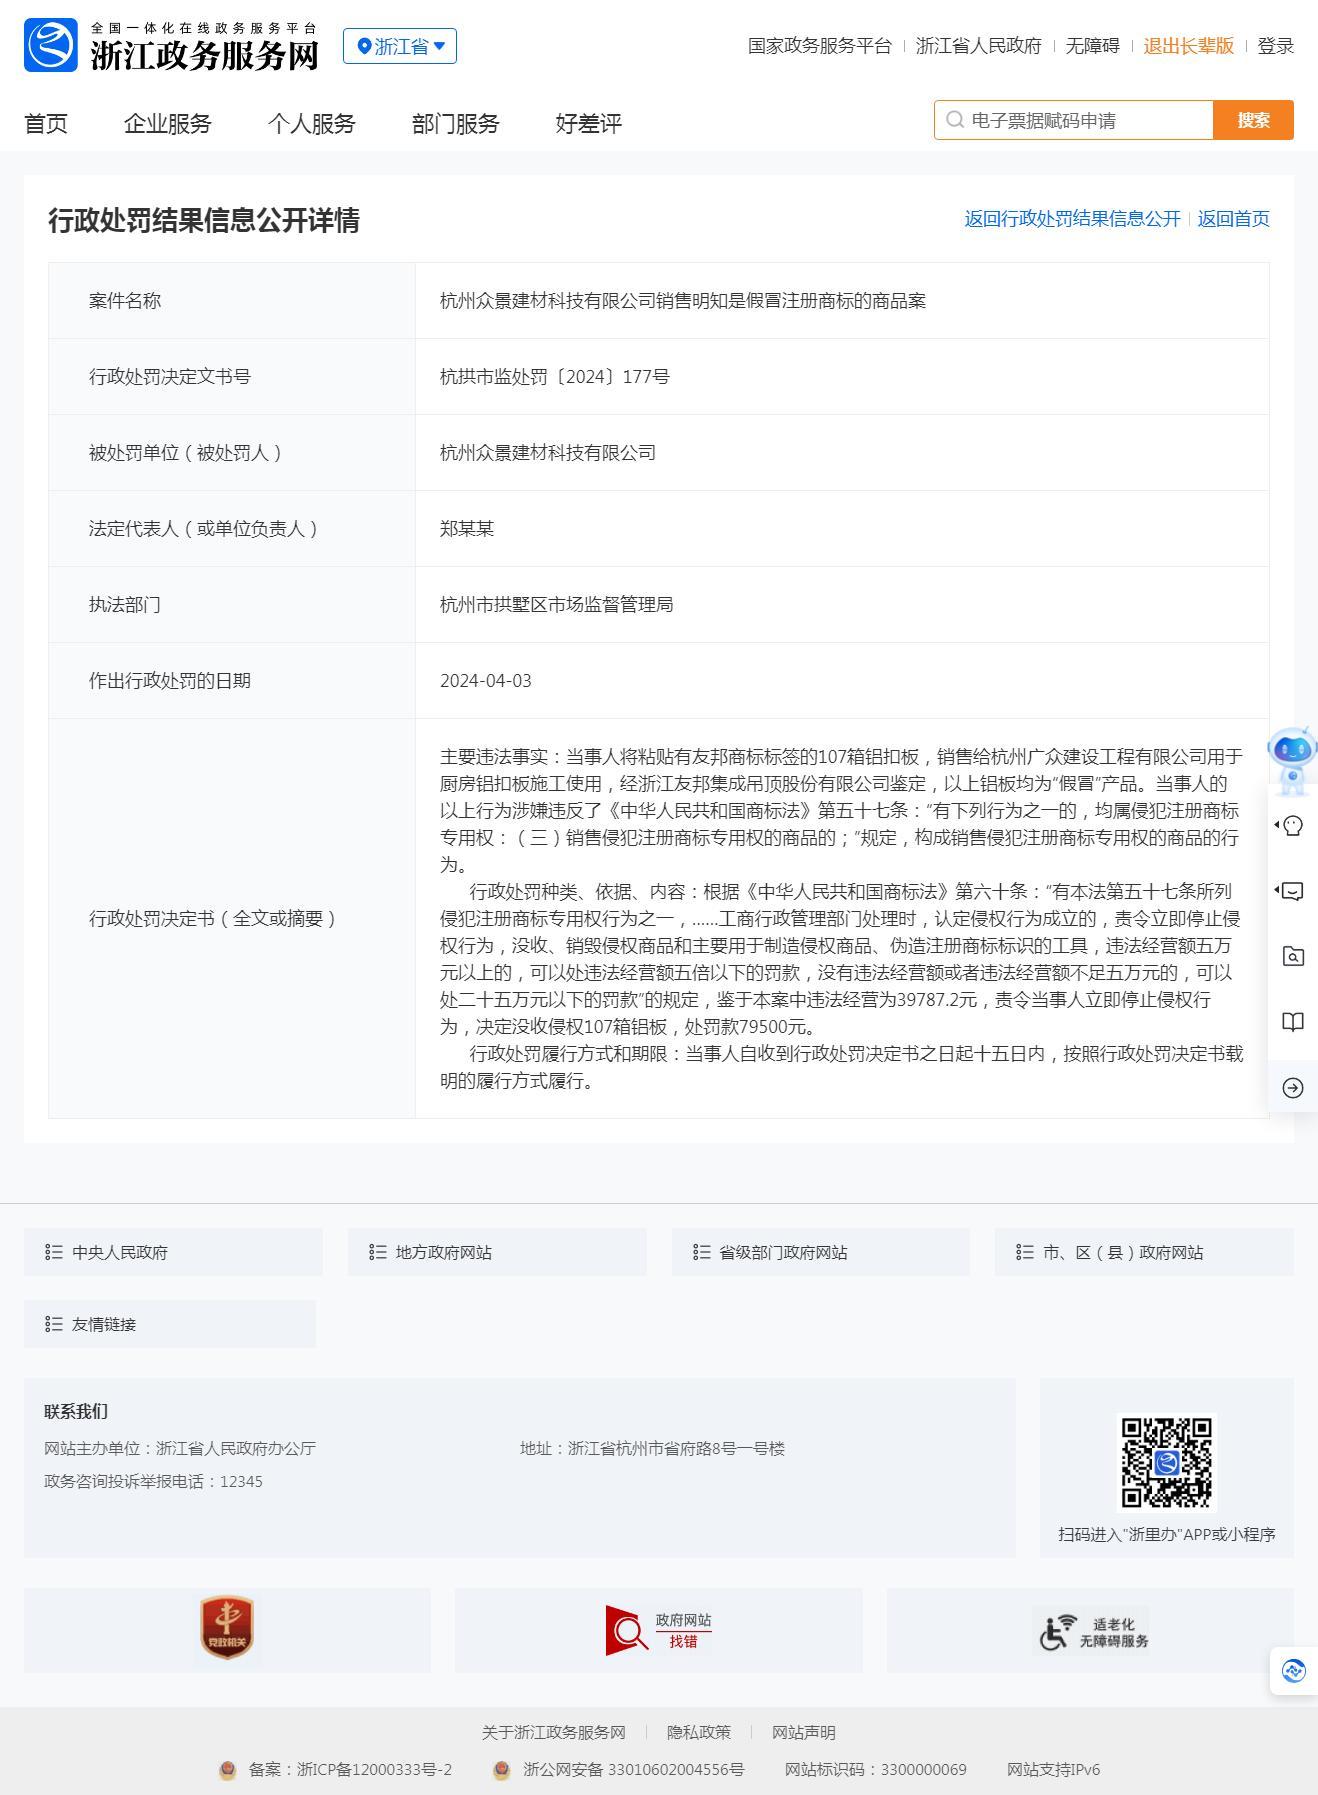 杭州众景建材科技有限公司销售明知是假冒注册商标的商品被罚3.9万元